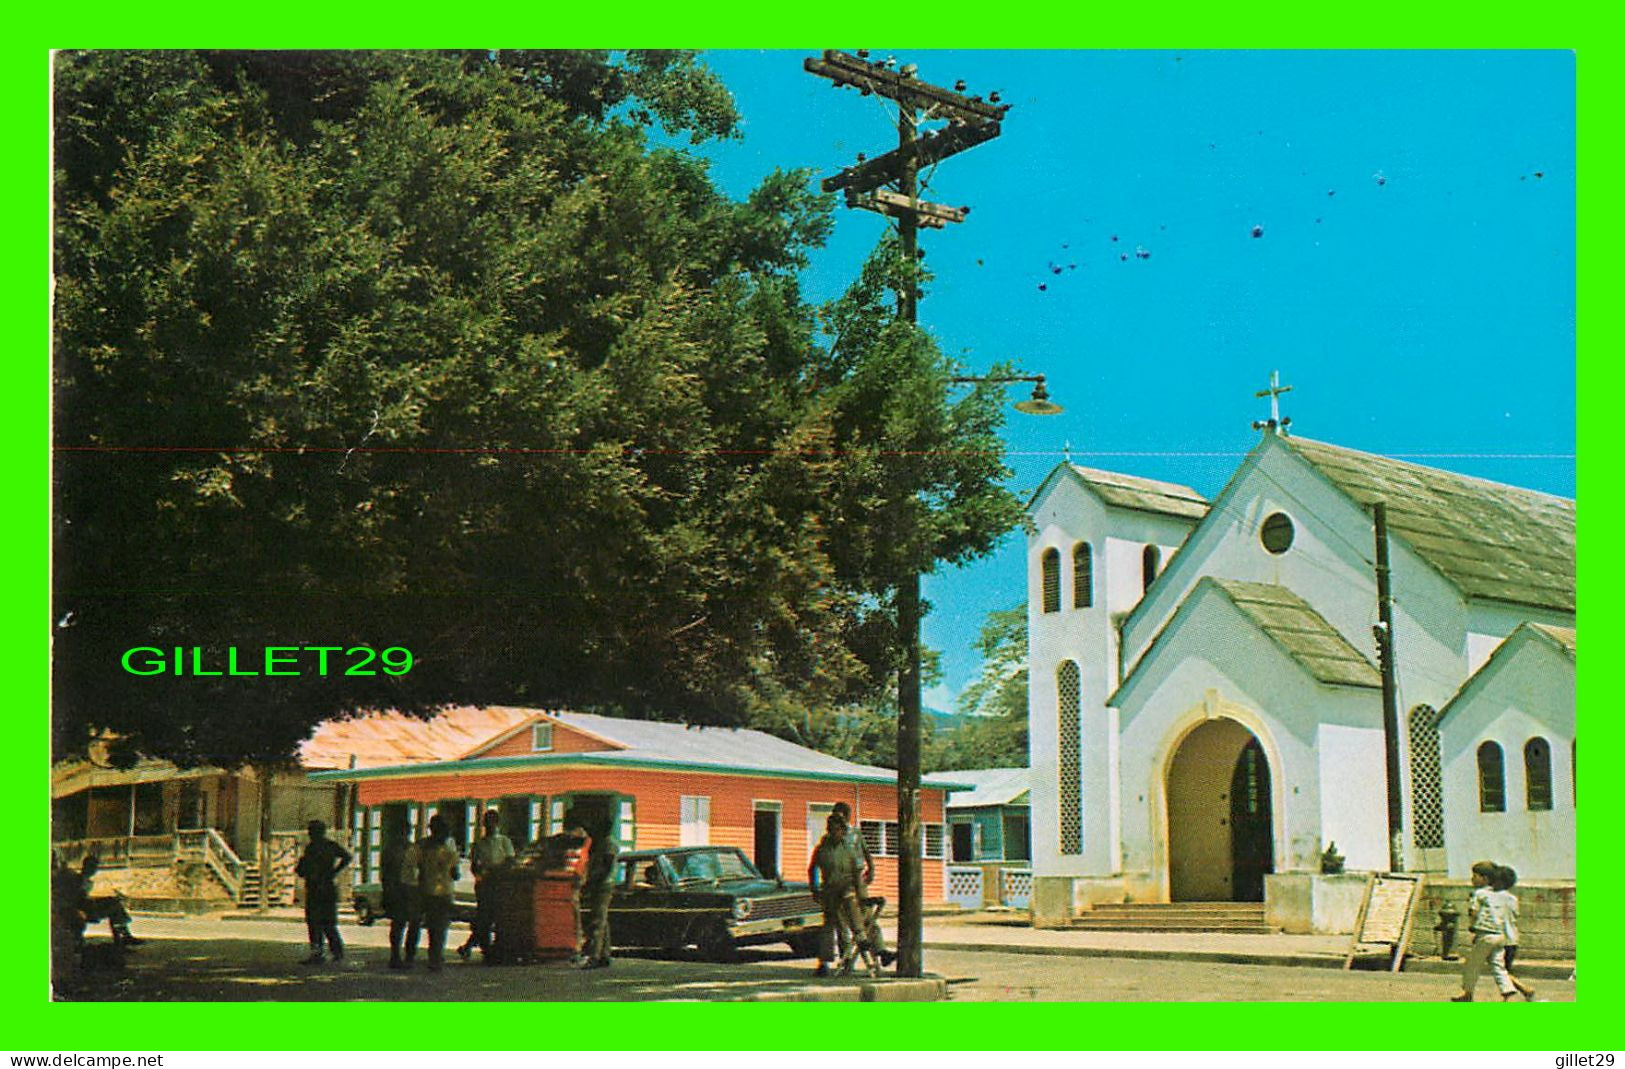 TAMBORIL, RÉPUBLIQUE DOMINICAINE - PARQUE E IGLESIA DE TAMBORIL - CHURCH & PARK OF TAMBORIL - WRITTEN - LIBRERIA TONY - - Dominikanische Rep.